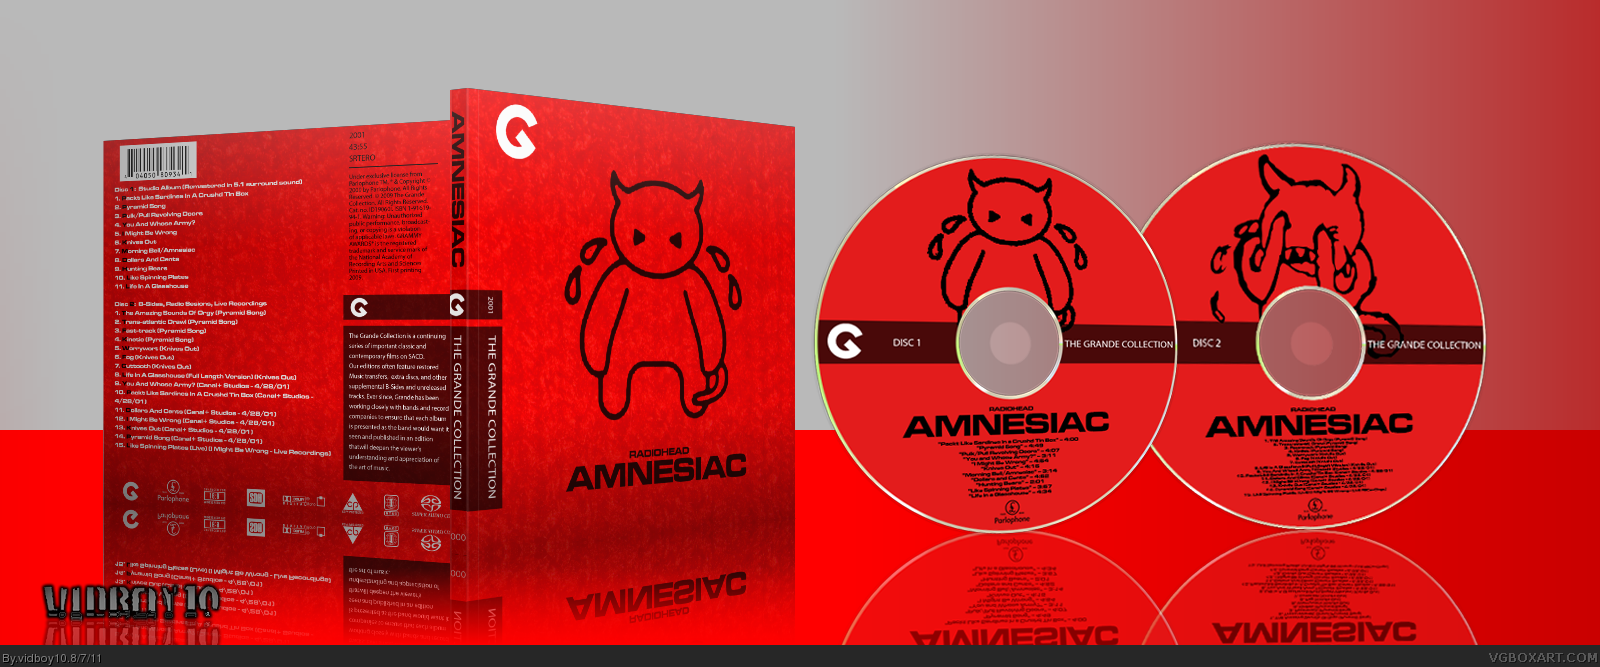 Radiohead - Amnesiac box cover